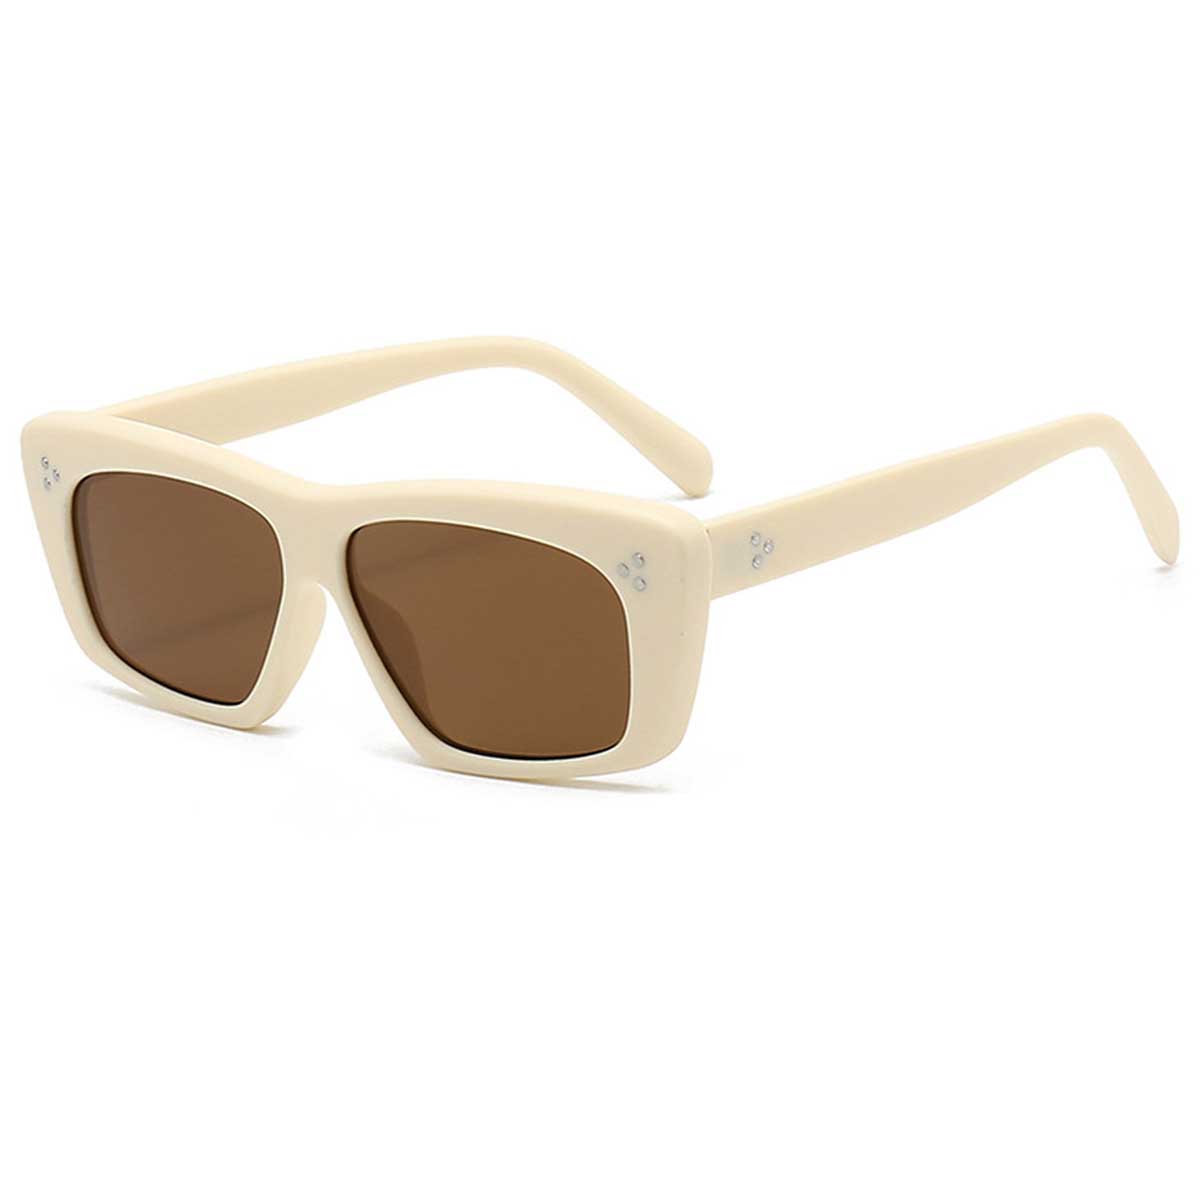 S27007 Monturas rectangulares Exquisitas gafas de sol de diseño con patillas gruesas y ojos de gato adornadas